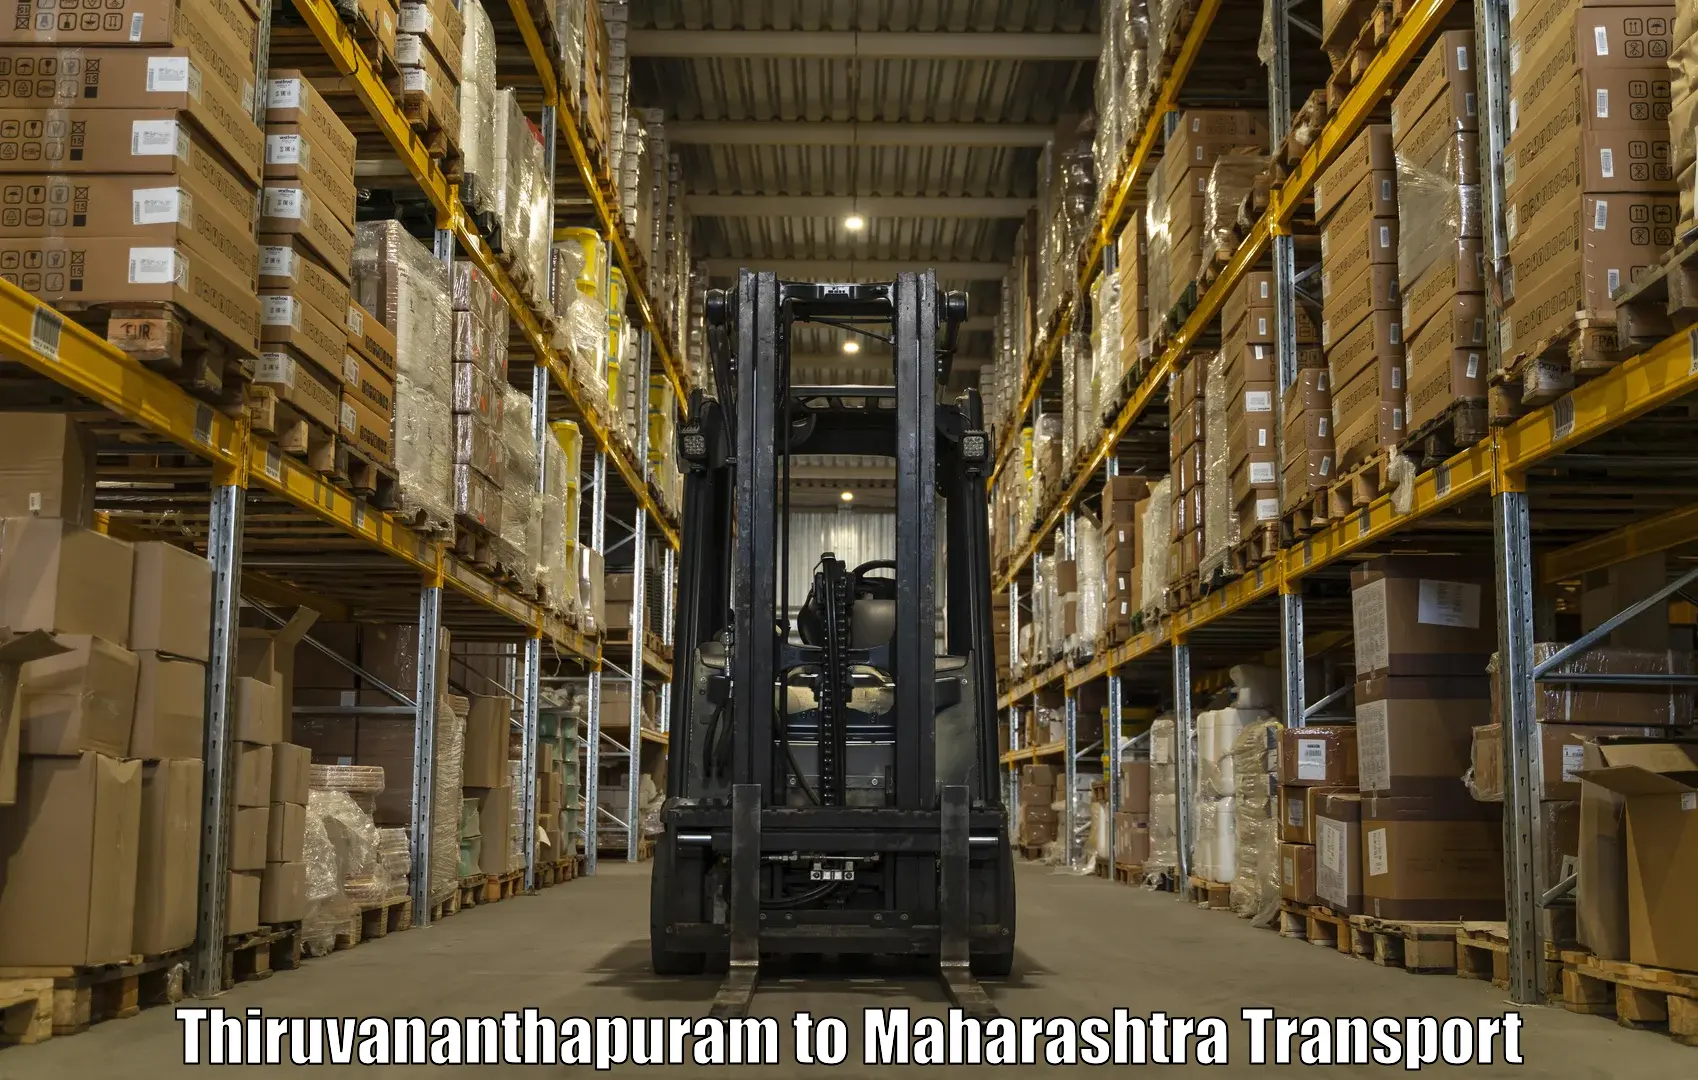 Truck transport companies in India Thiruvananthapuram to Uruli Kanchan